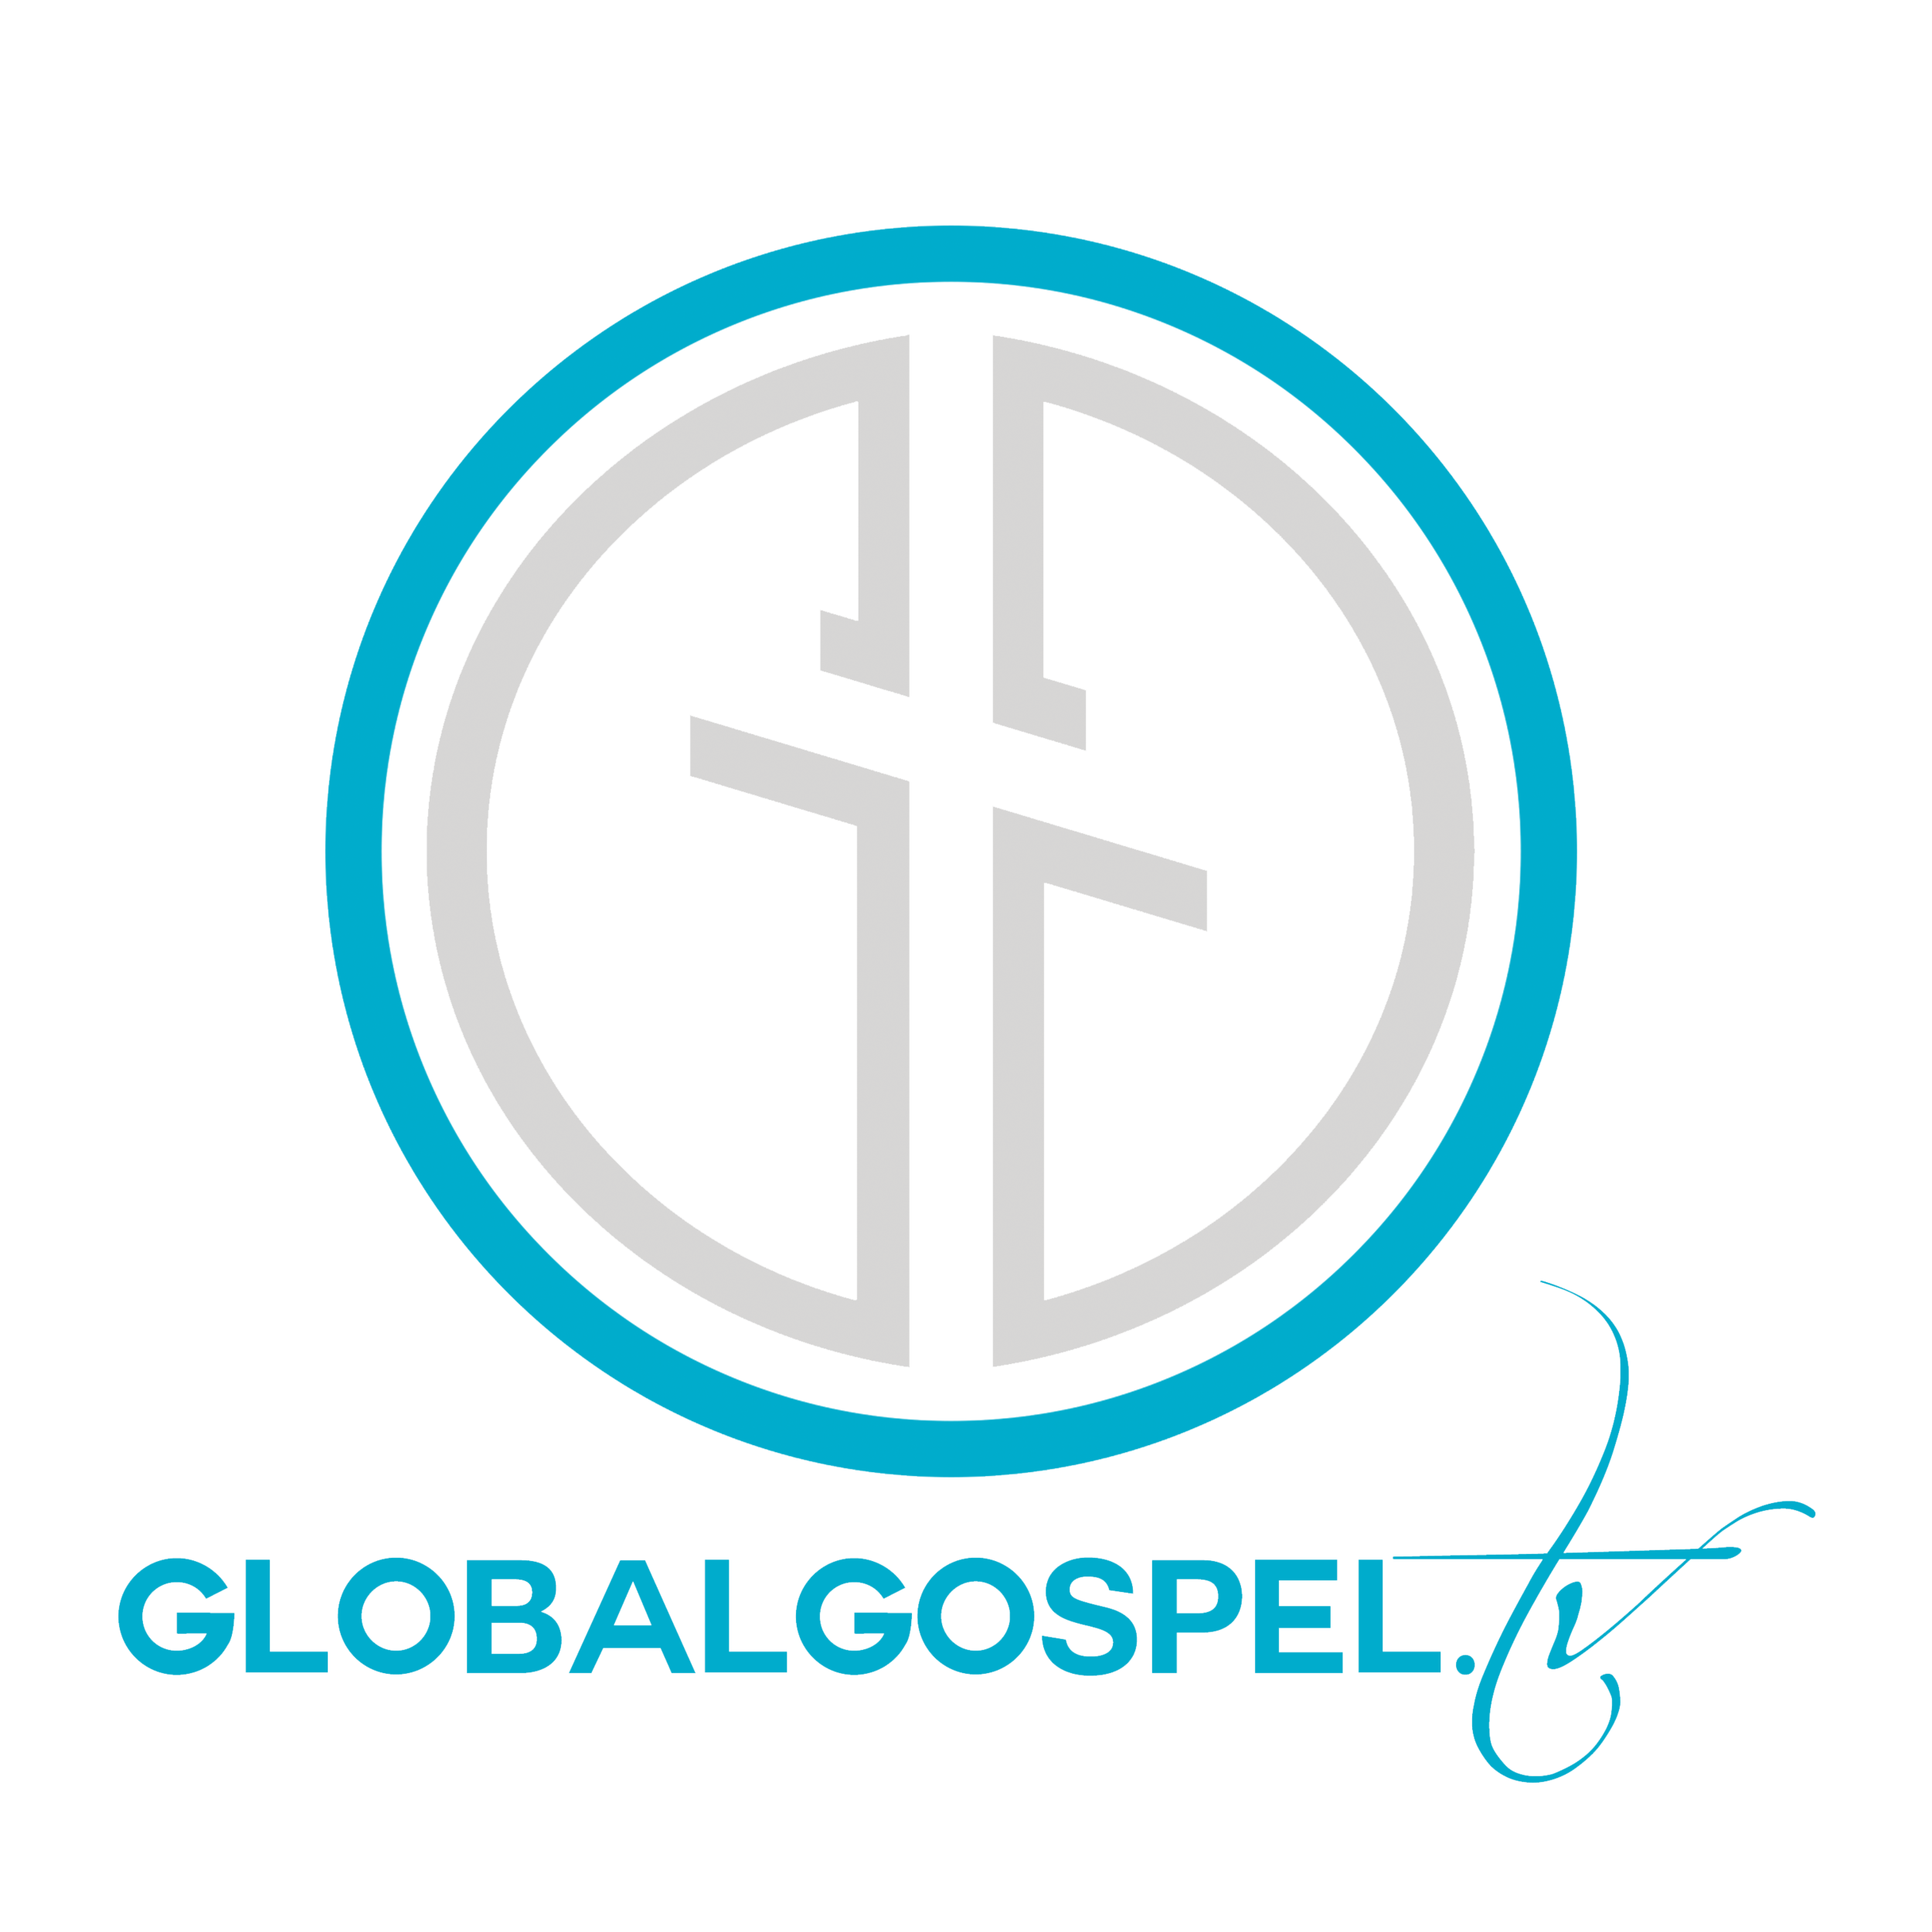 GlobalGospel.tv